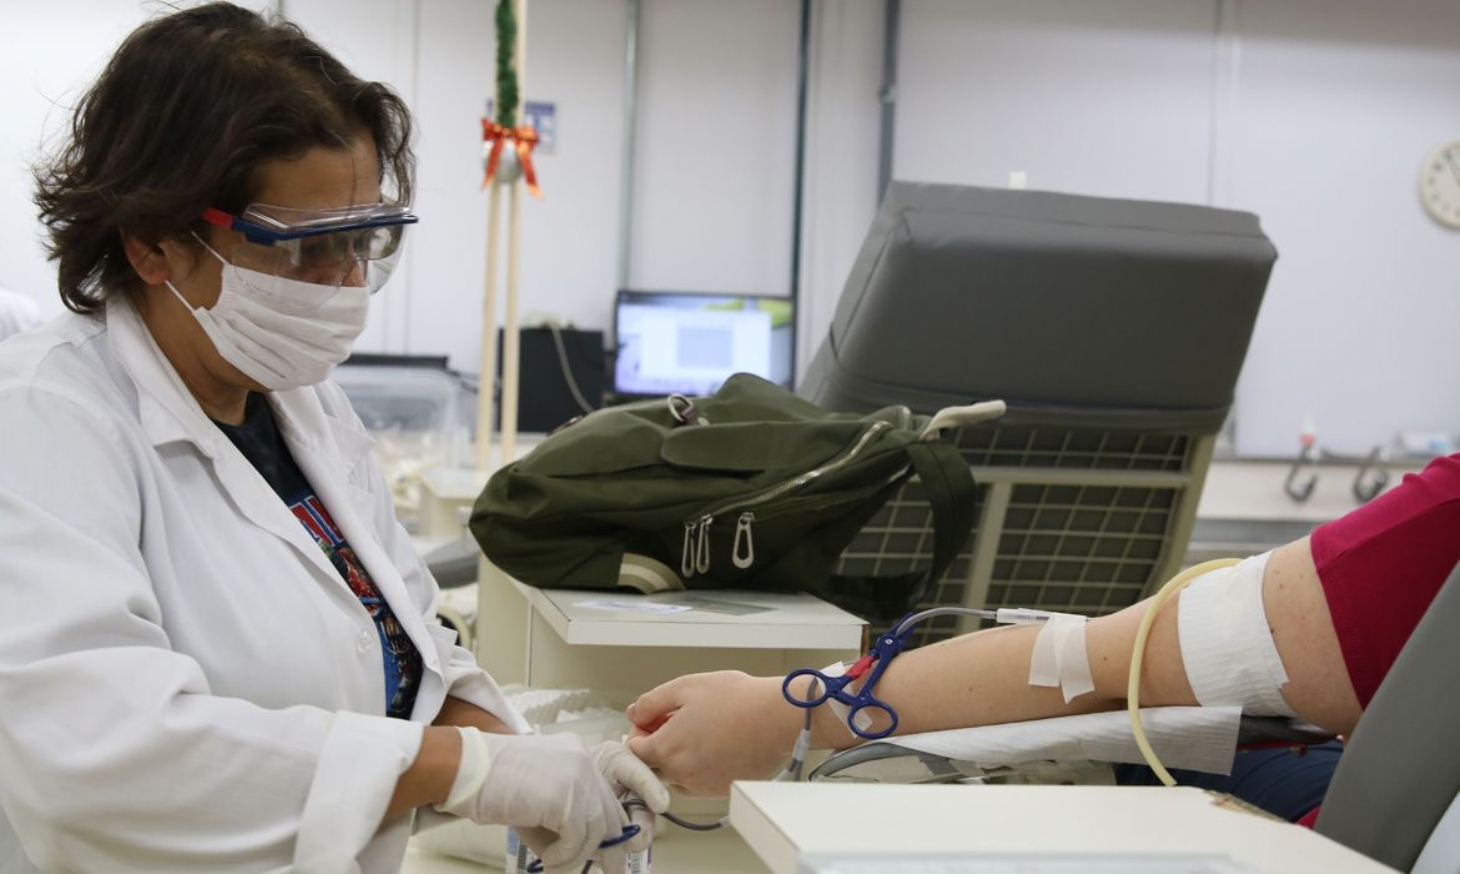 Queda na doação de sangue devido à pandemia preocupa hemocentros | Jornal da Orla